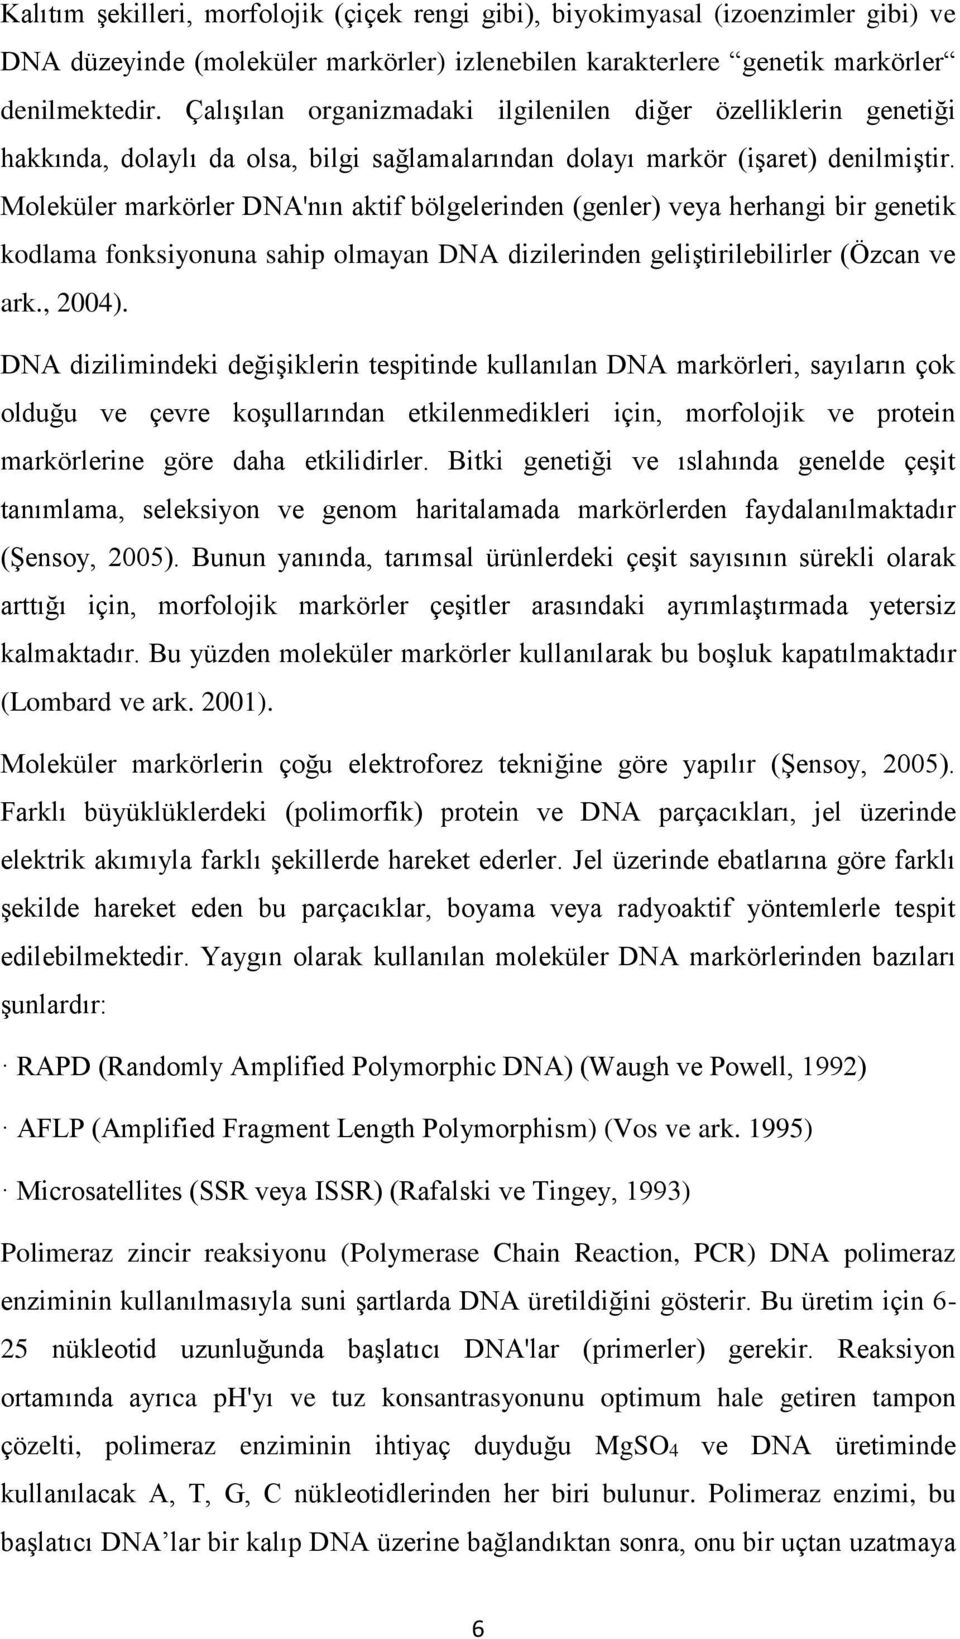 Moleküler markörler DNA'nın aktif bölgelerinden (genler) veya herhangi bir genetik kodlama fonksiyonuna sahip olmayan DNA dizilerinden geliştirilebilirler (Özcan ve ark., 2004).